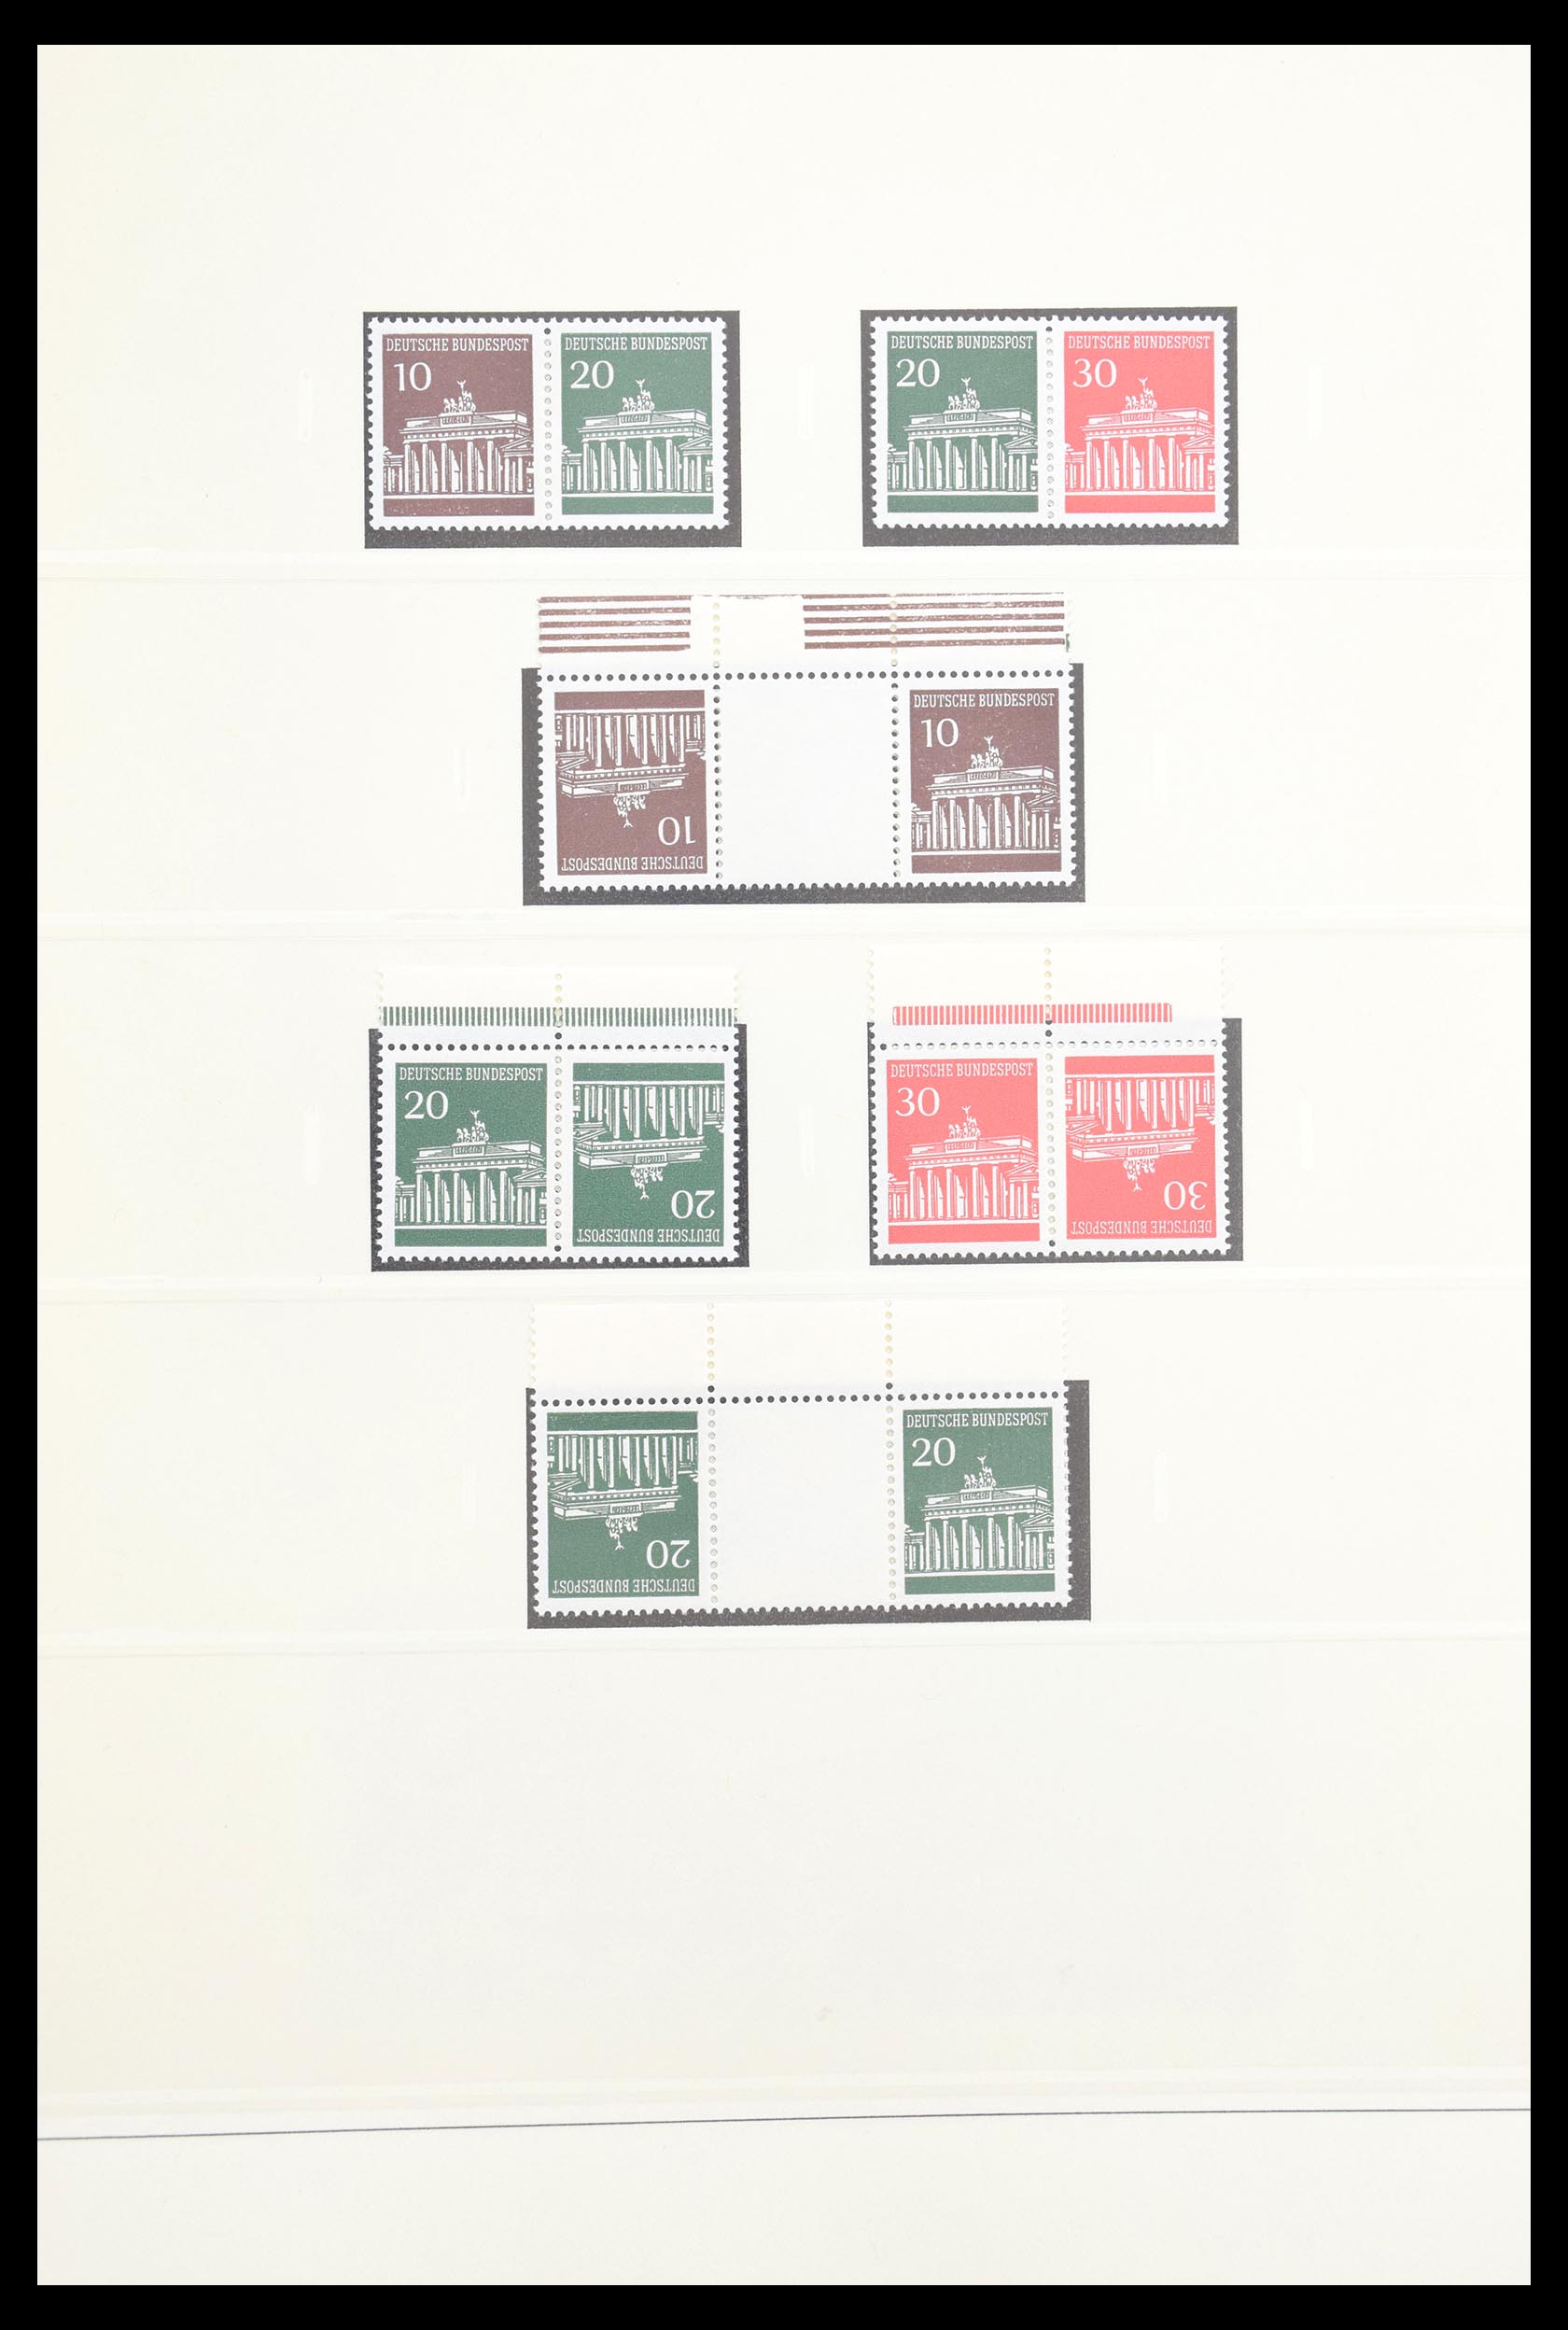 30605 025 - 30605 Bundespost combinaties 1951-1974.